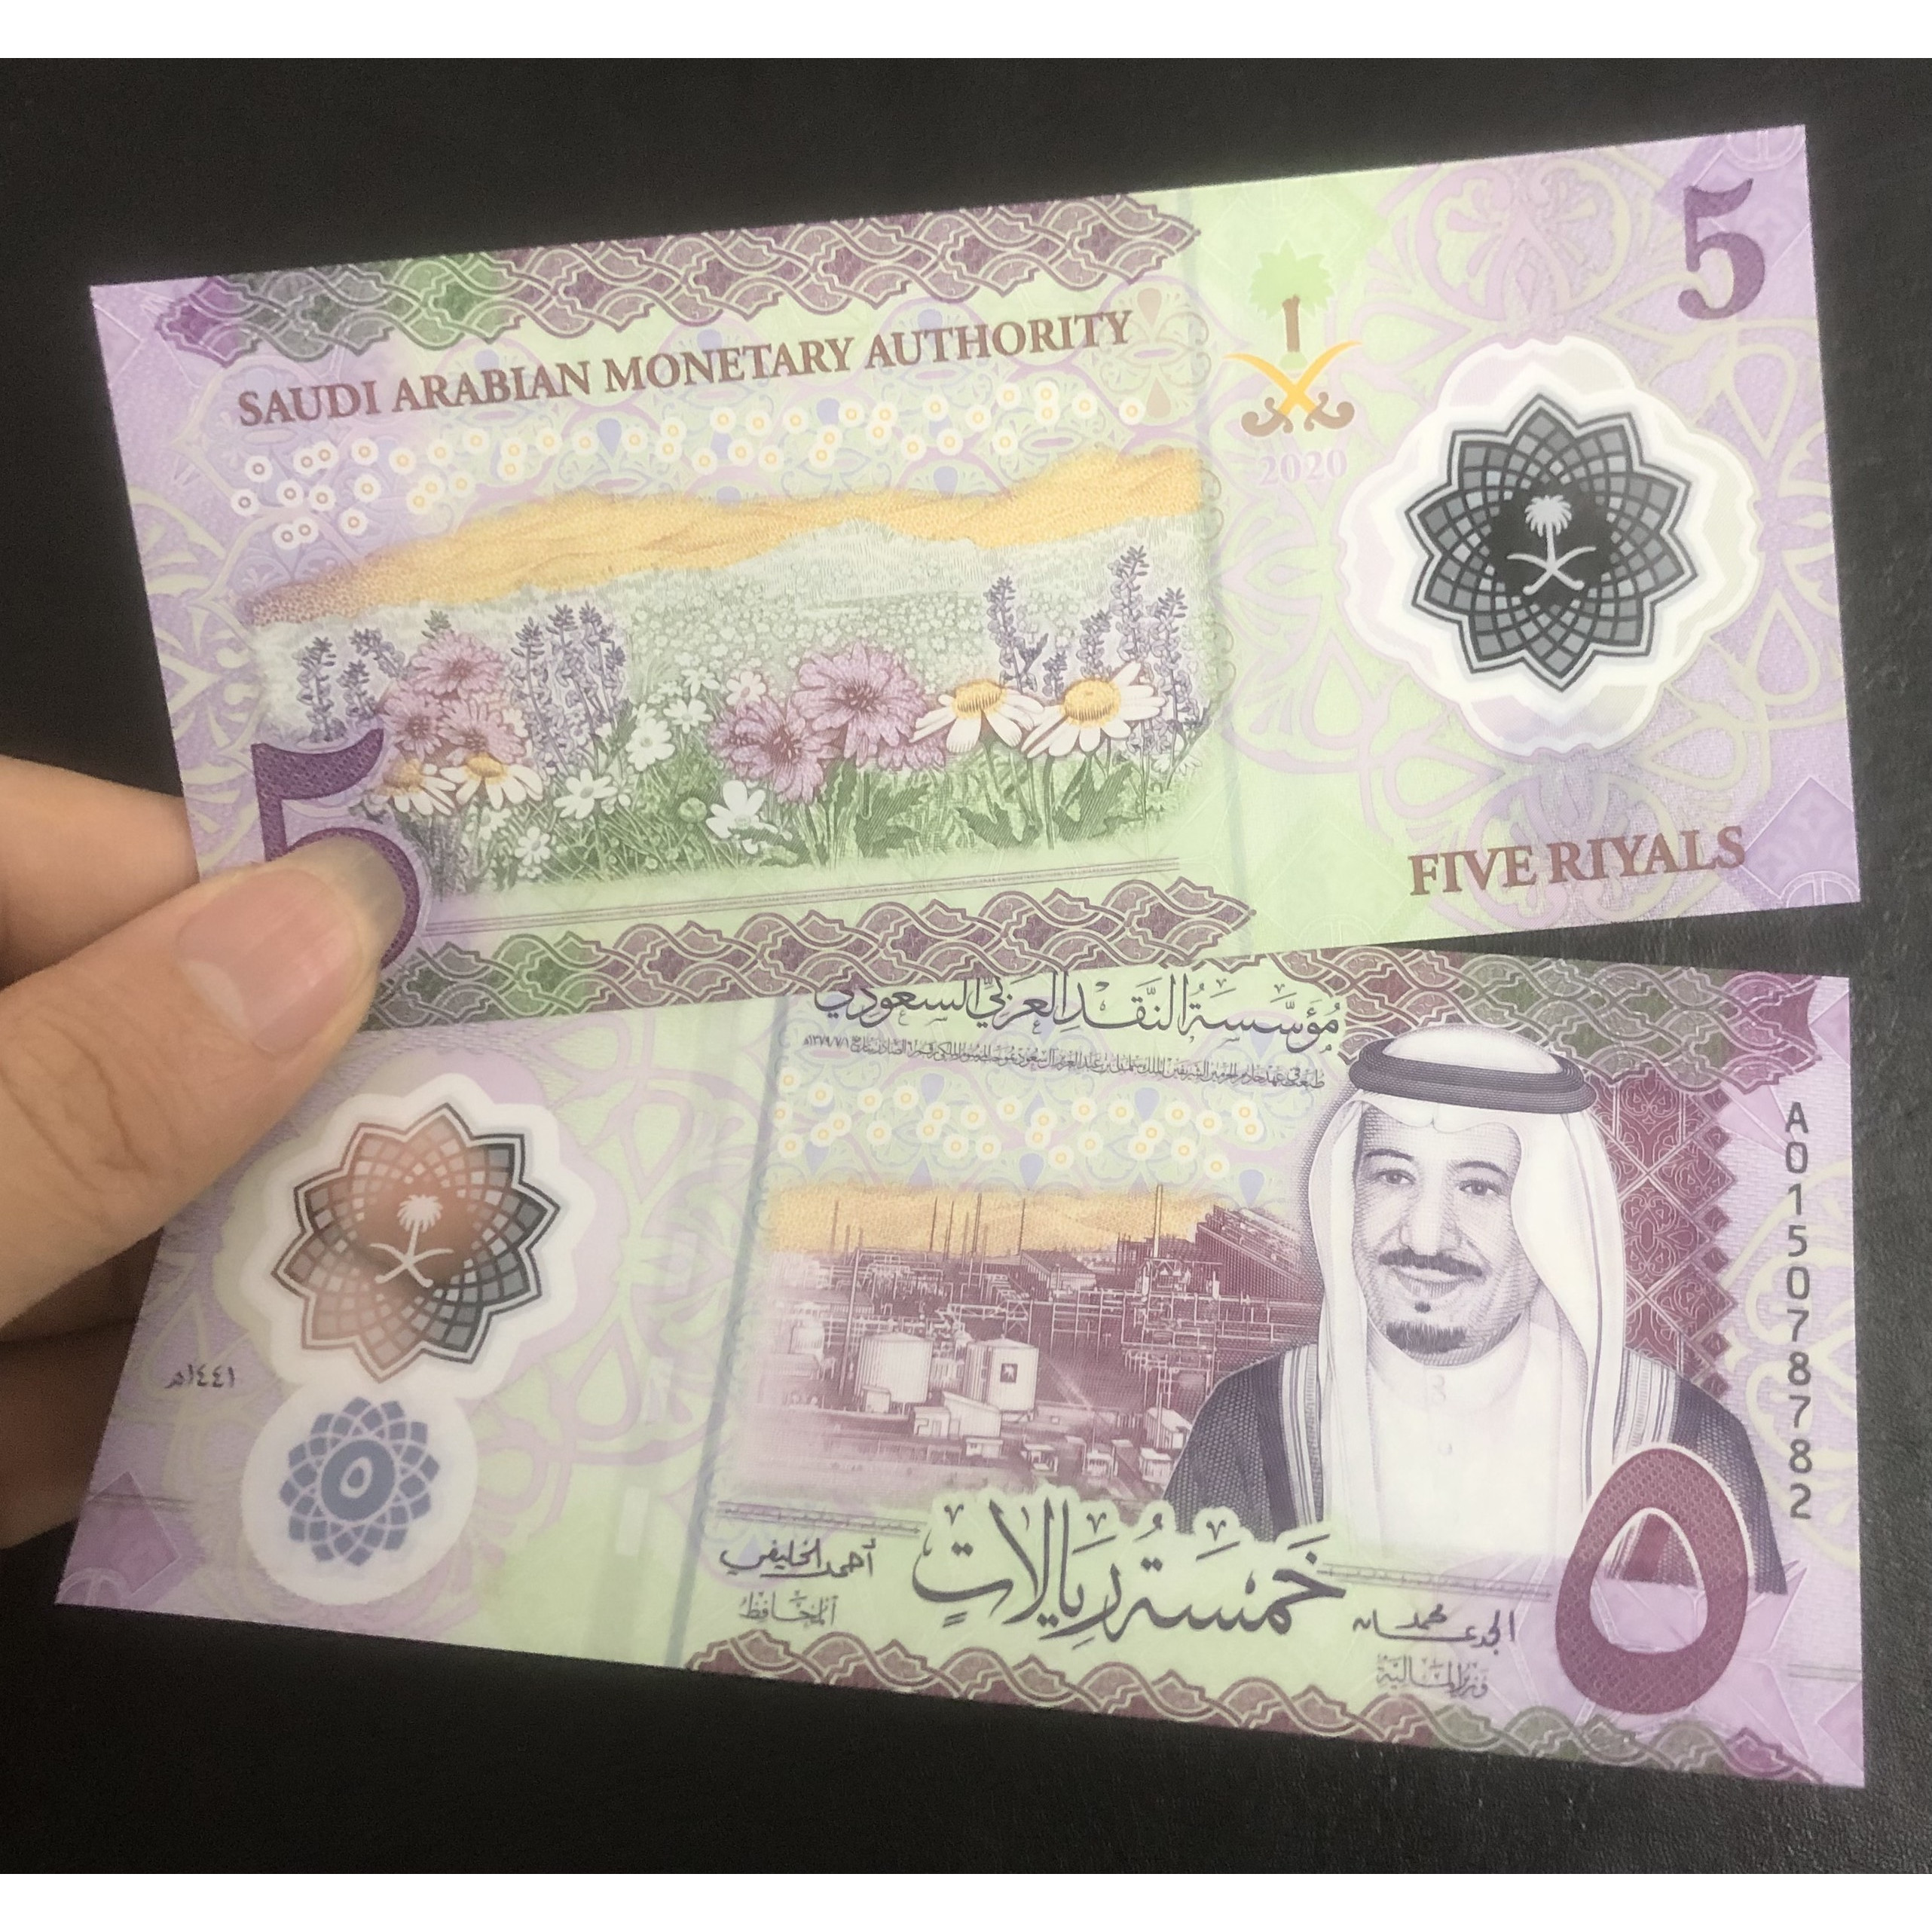 Tiền thế giới, Ả rập Saudi polymer mệnh giá 5 Ry thiết kế đẹp mắt